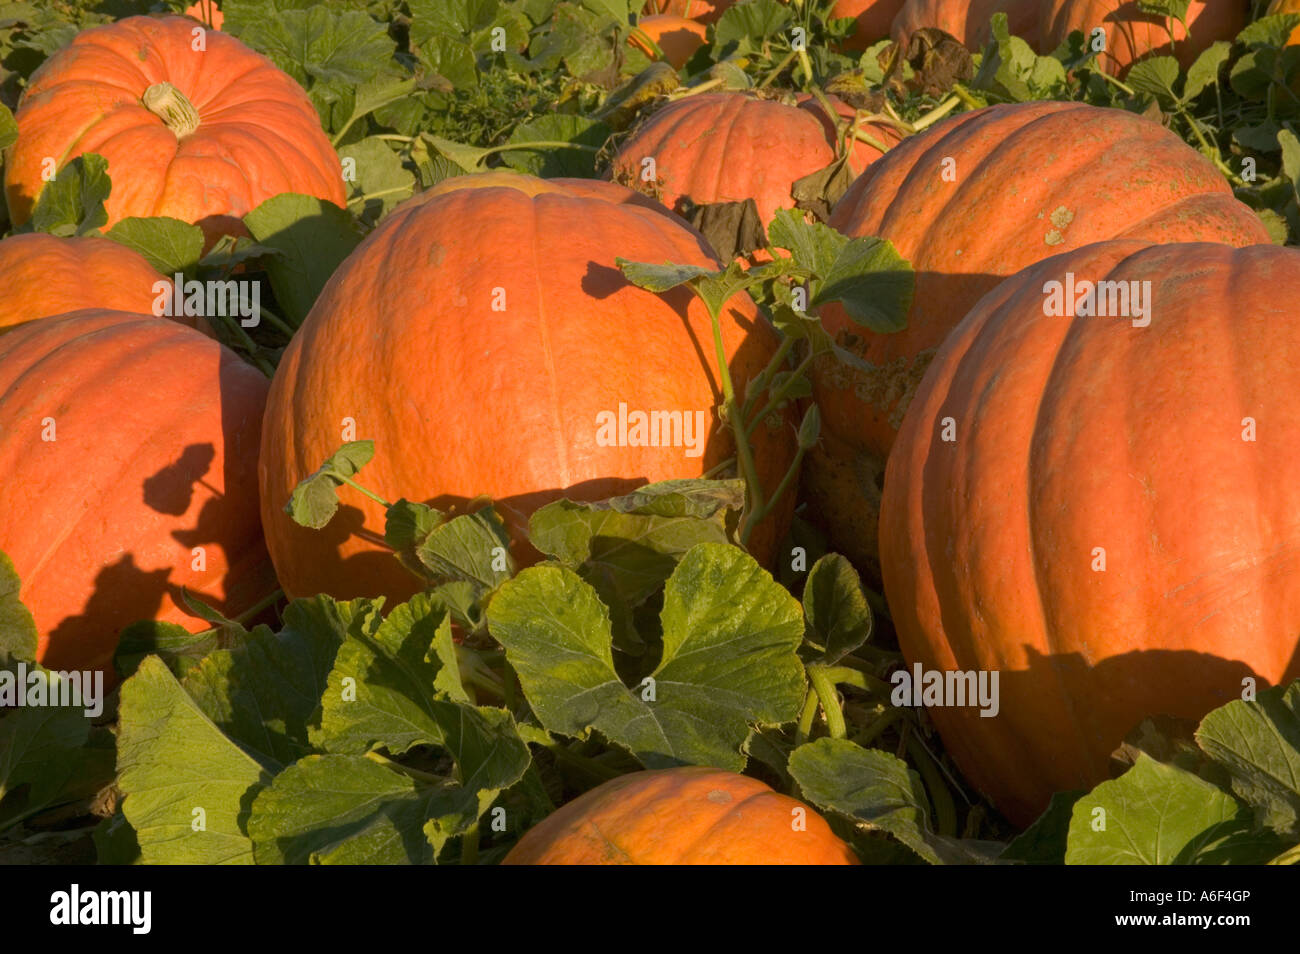 Pumpkins 'Big Max'  in field. Stock Photo